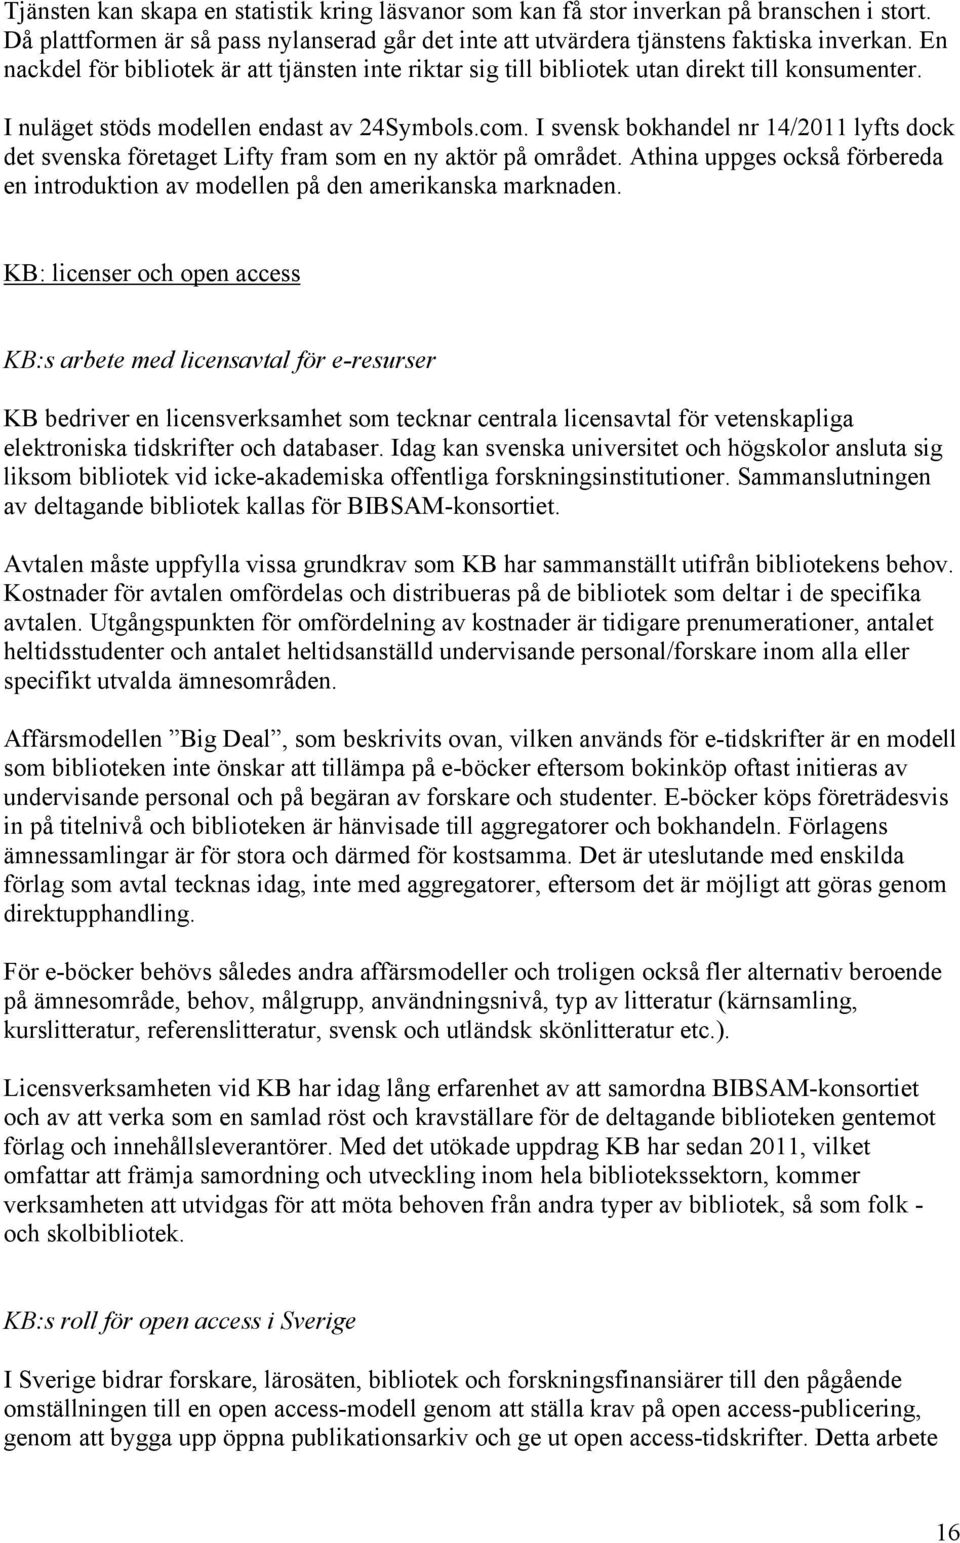 I svensk bokhandel nr 14/2011 lyfts dock det svenska företaget Lifty fram som en ny aktör på området. Athina uppges också förbereda en introduktion av modellen på den amerikanska marknaden.